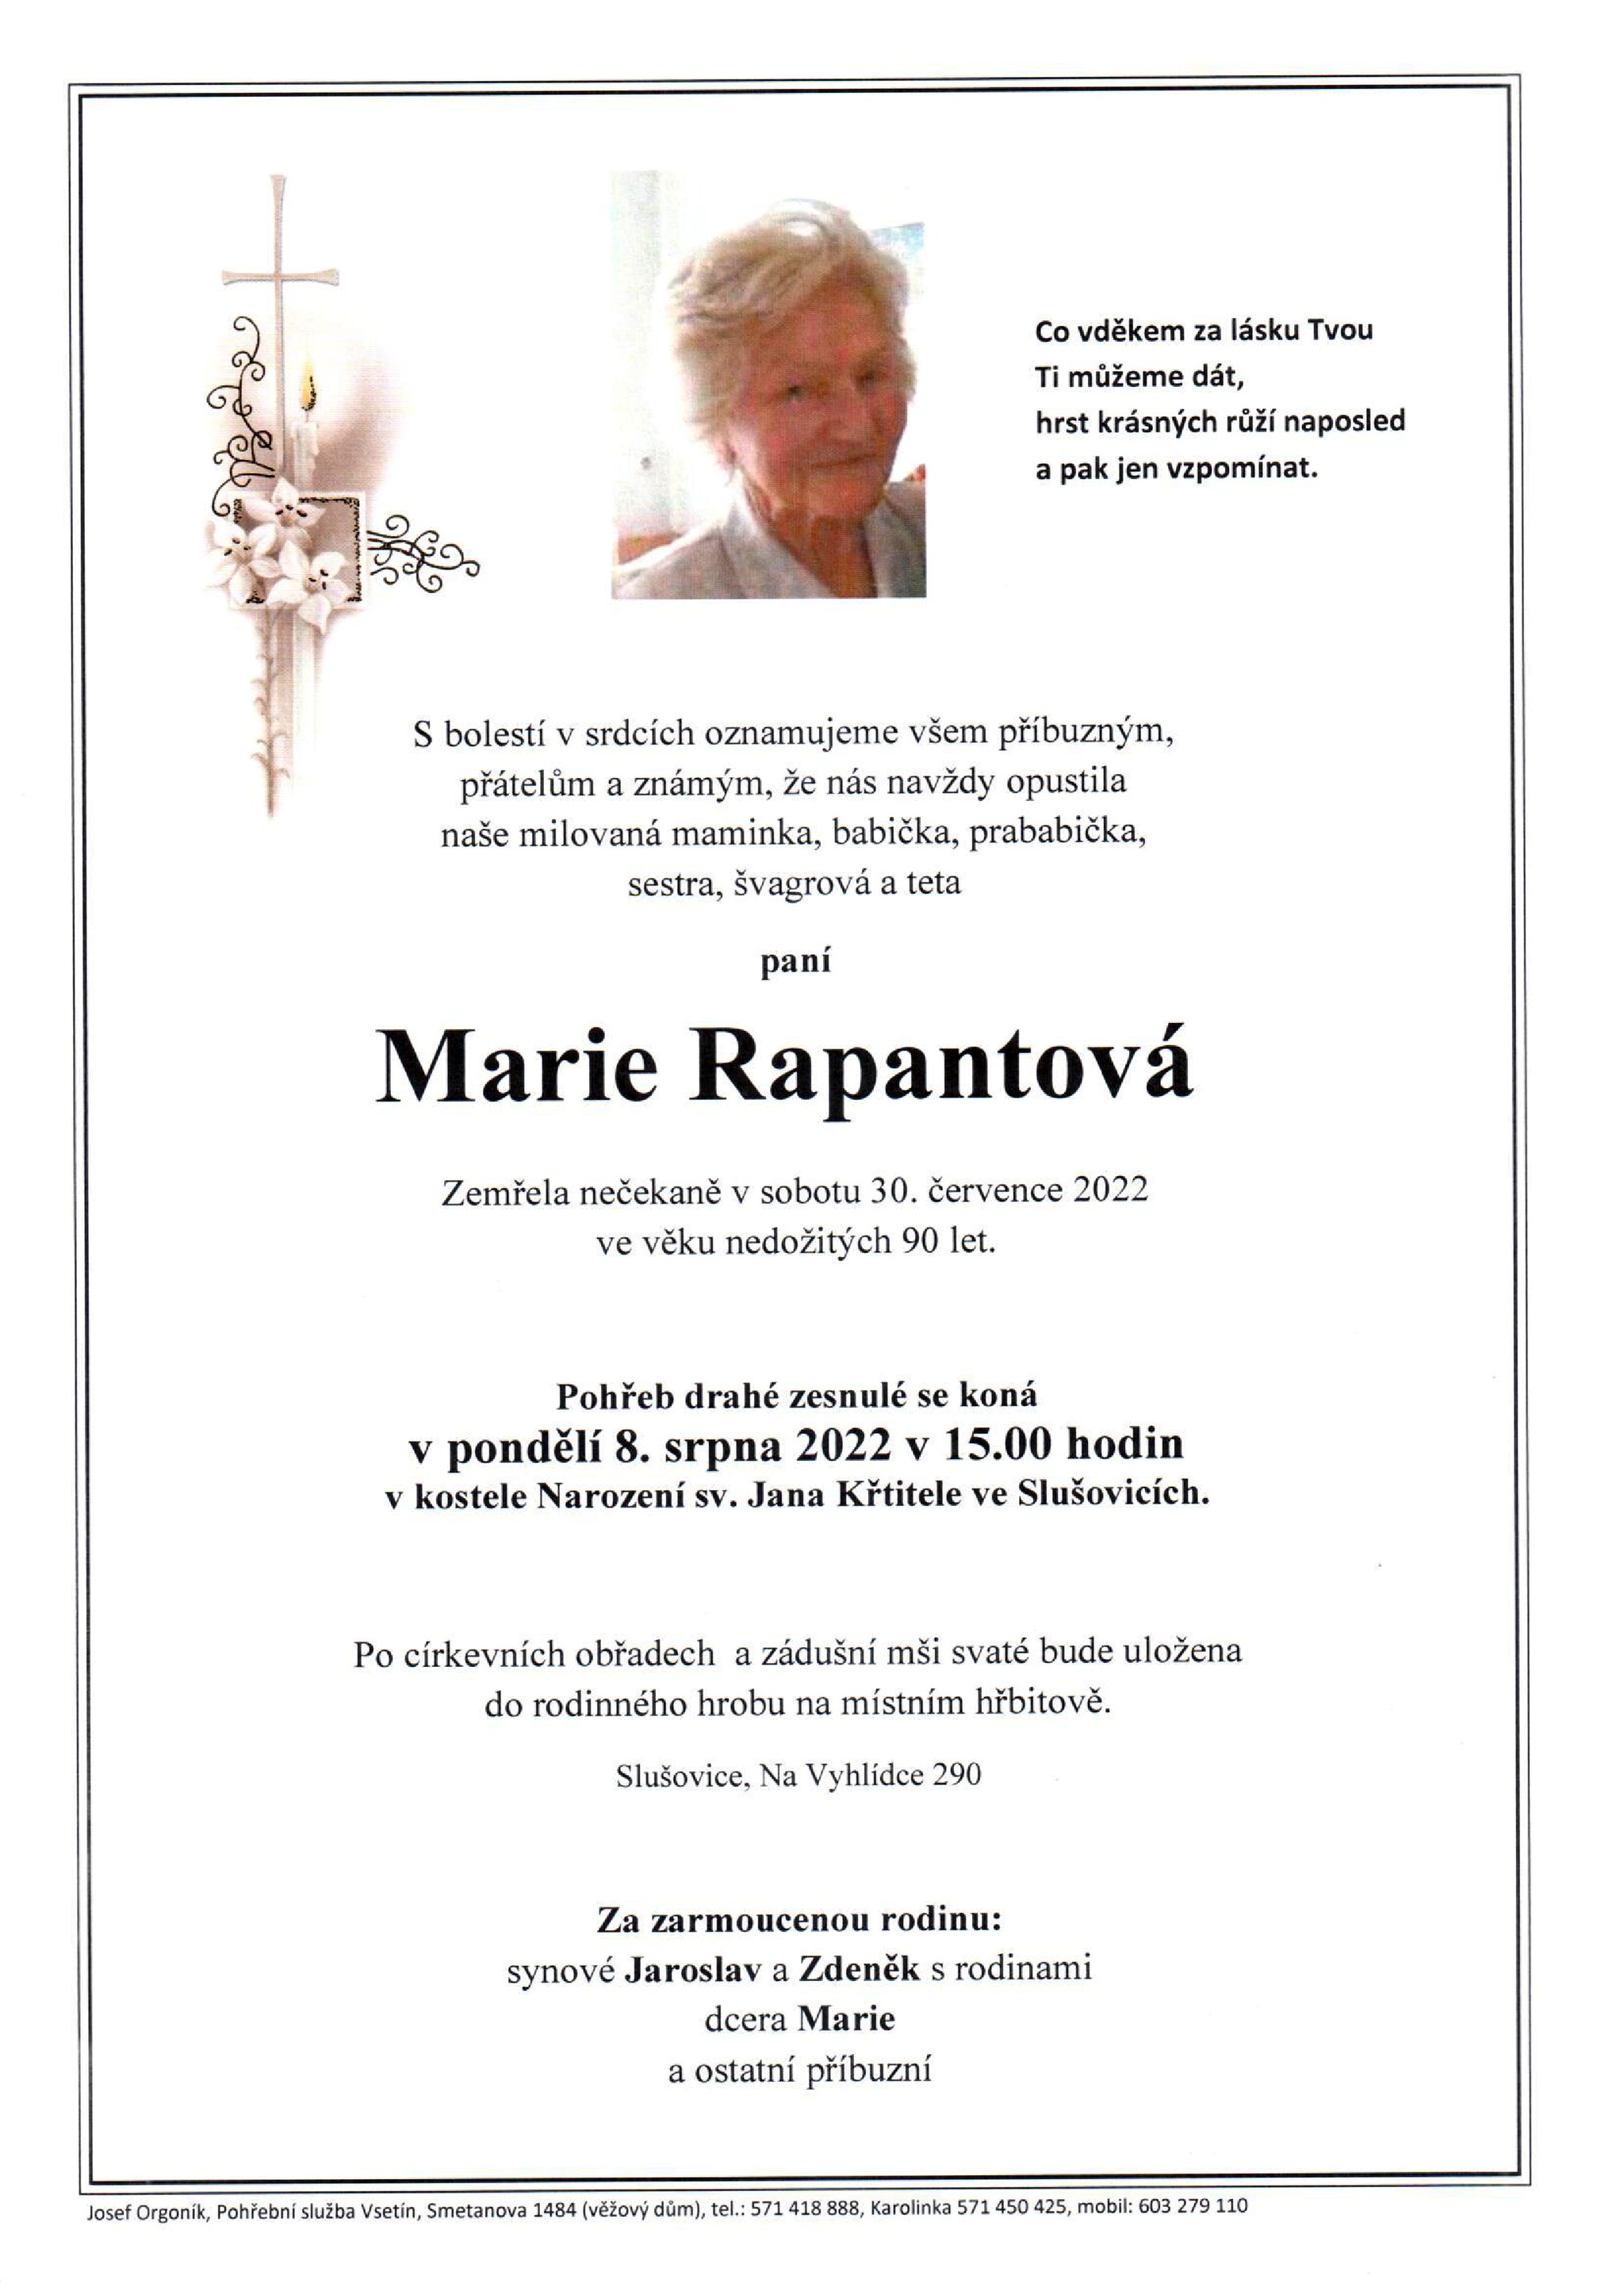 Marie Rapantová